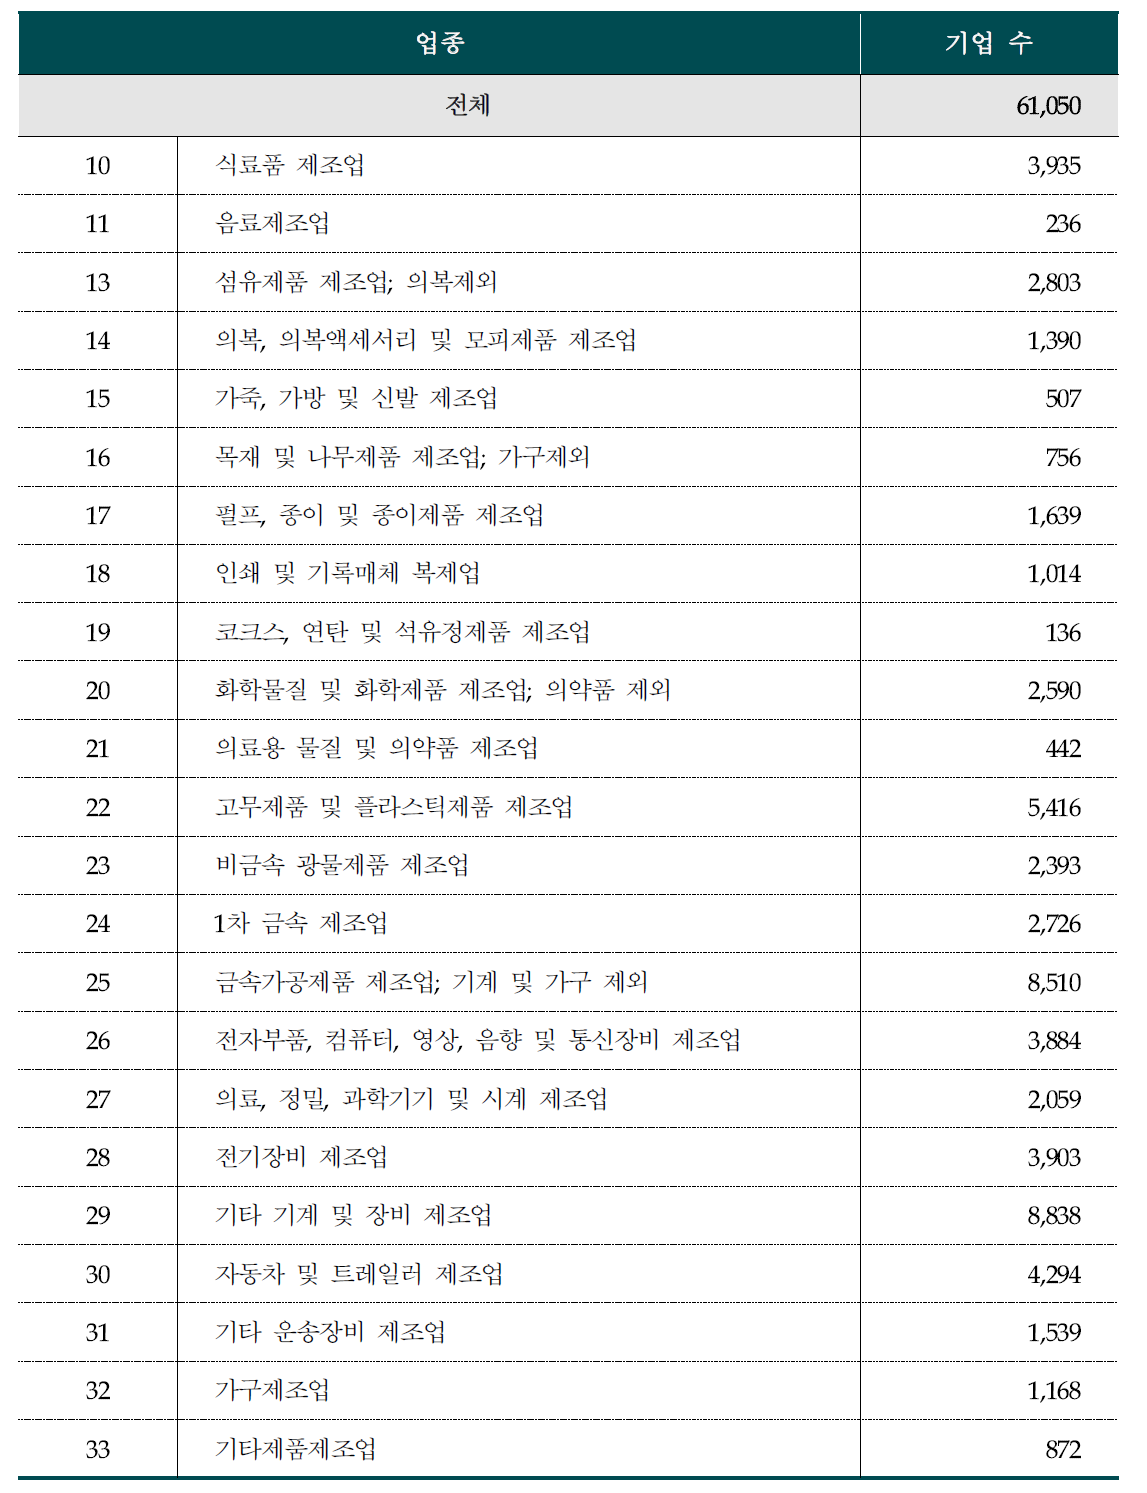 2014년 기준 한국표준산업분류(KSIC) 제조업 기업 수